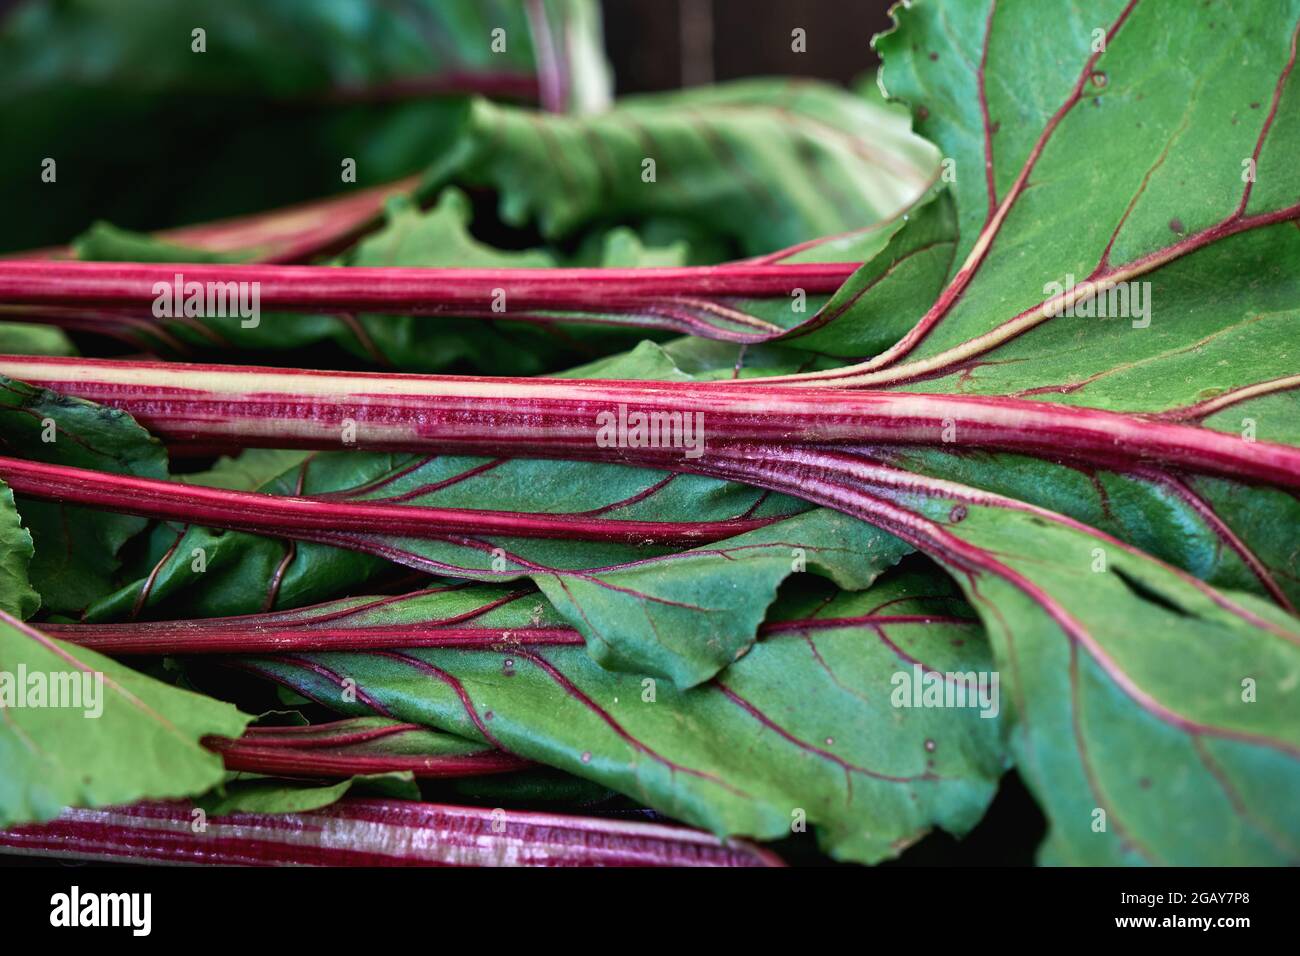 Detalle de la remolacha de jardín beta vulgares rojos betanina tallos y hojas verdes Foto de stock